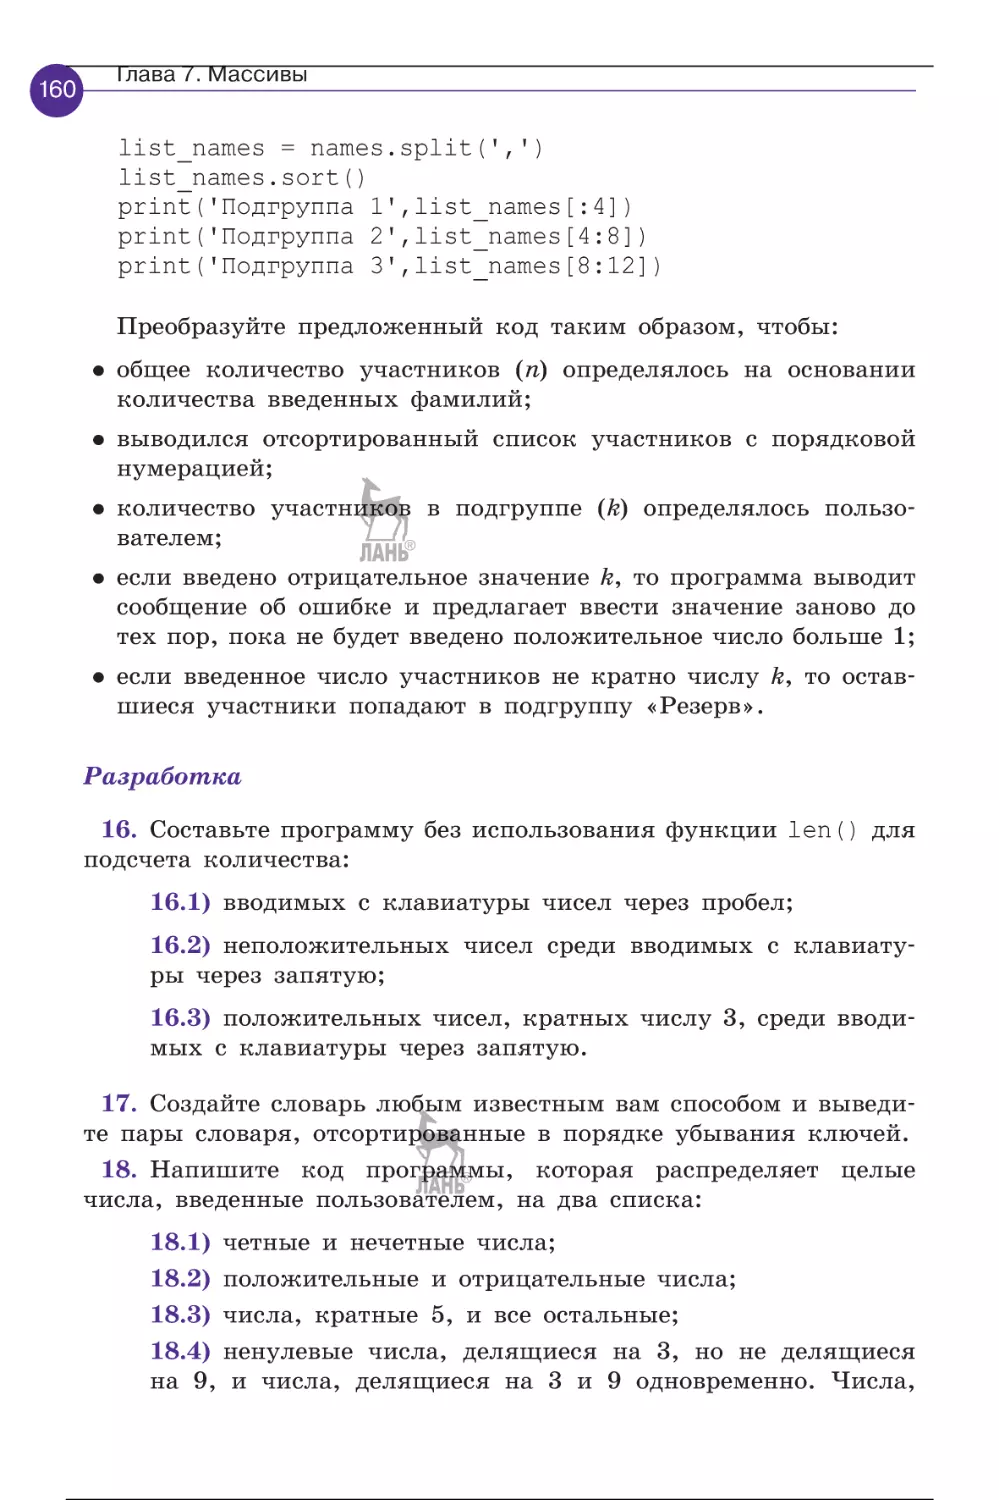 programmirovanie_na_python_pervye_sagi_161-180